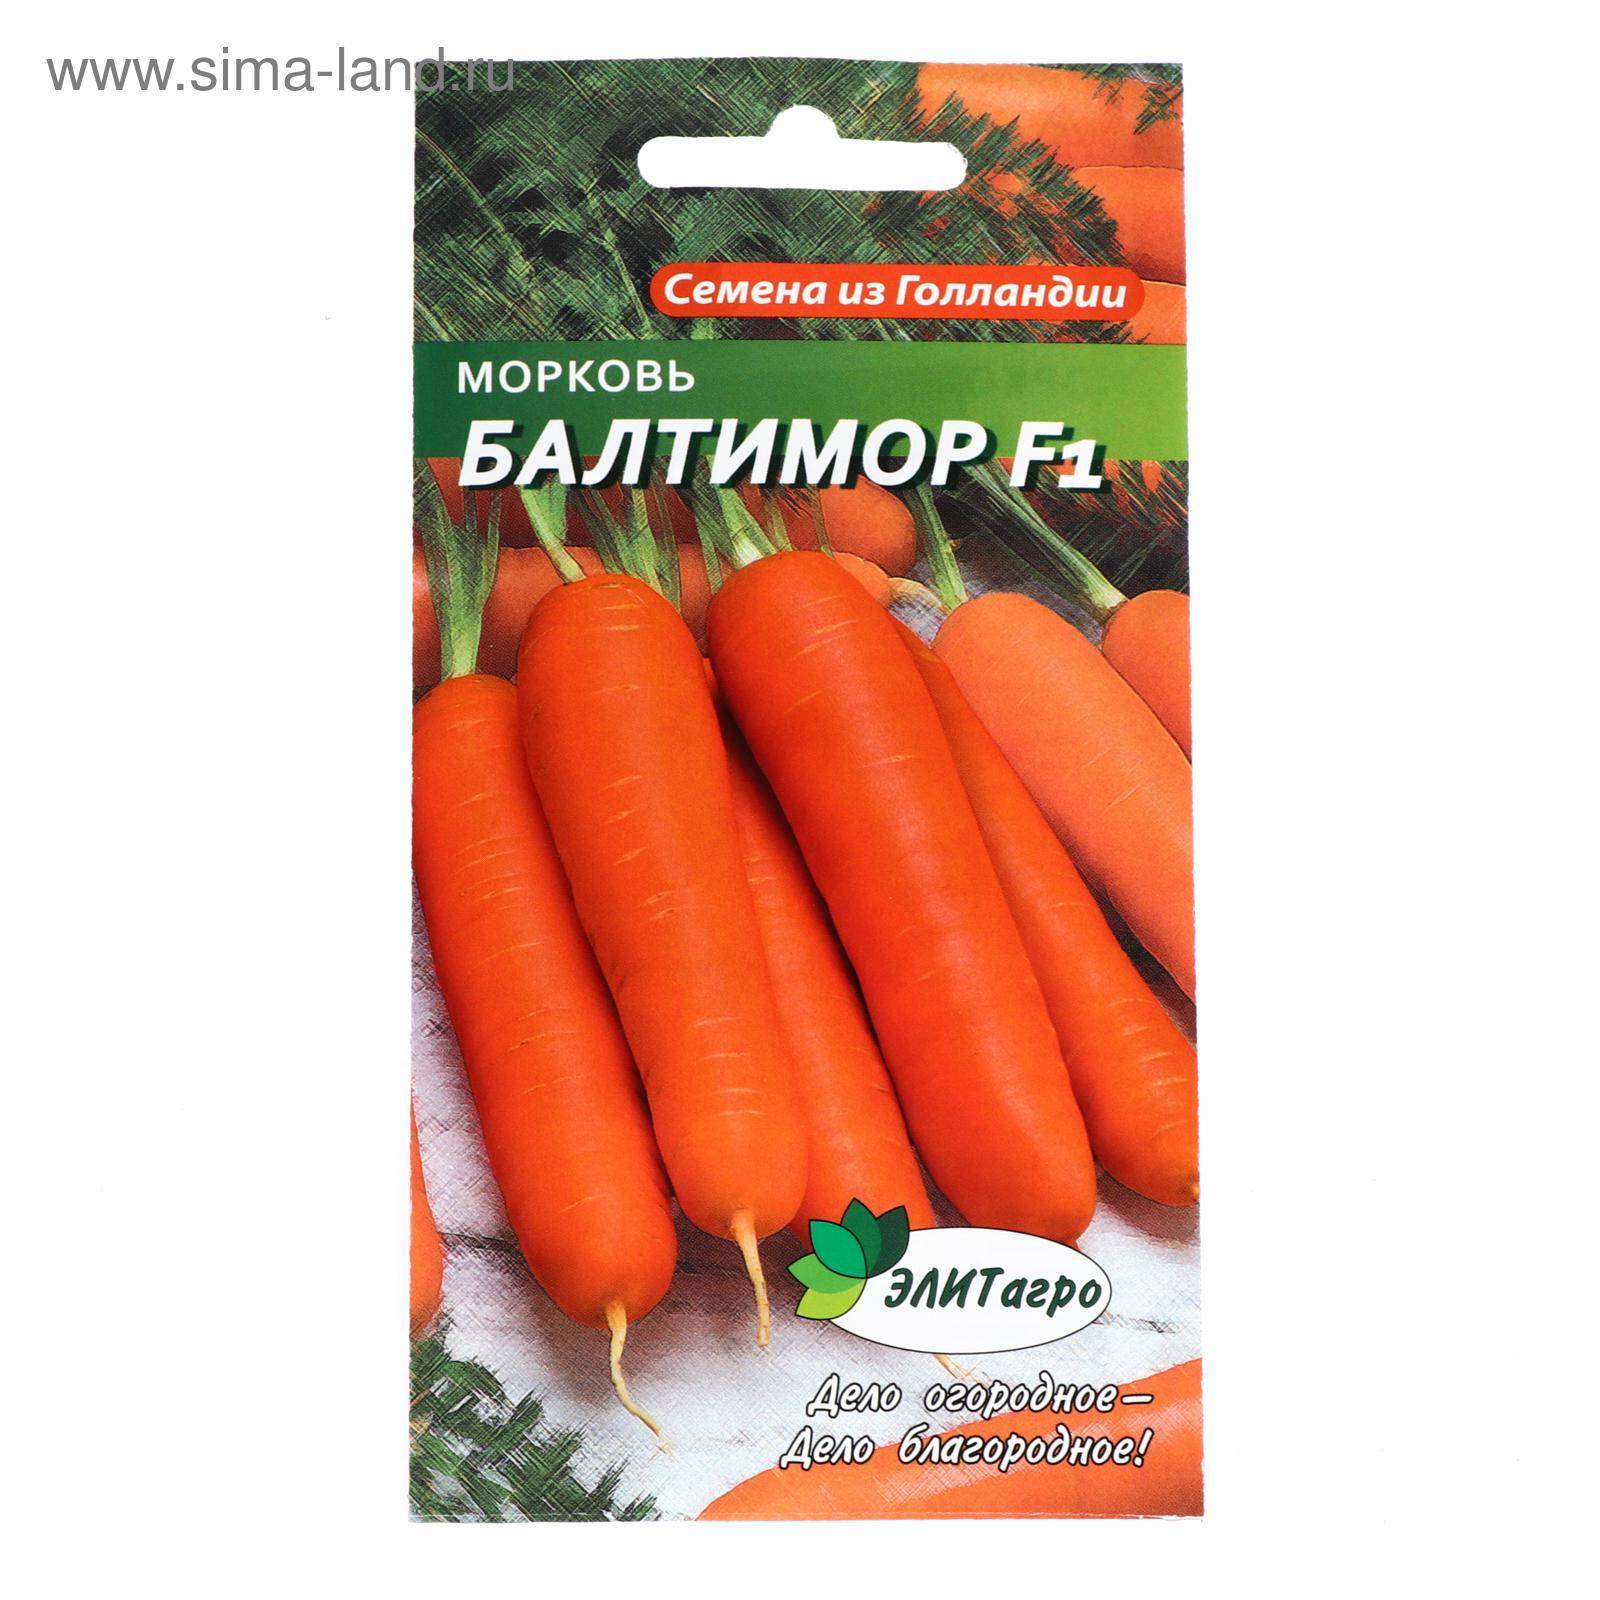 Морковь балтимор f1: характеристика и описание с фото, нюансы выращивания и сбор урожая, достоинства и недостатки, а также похожие сорта и отличие от других видов русский фермер